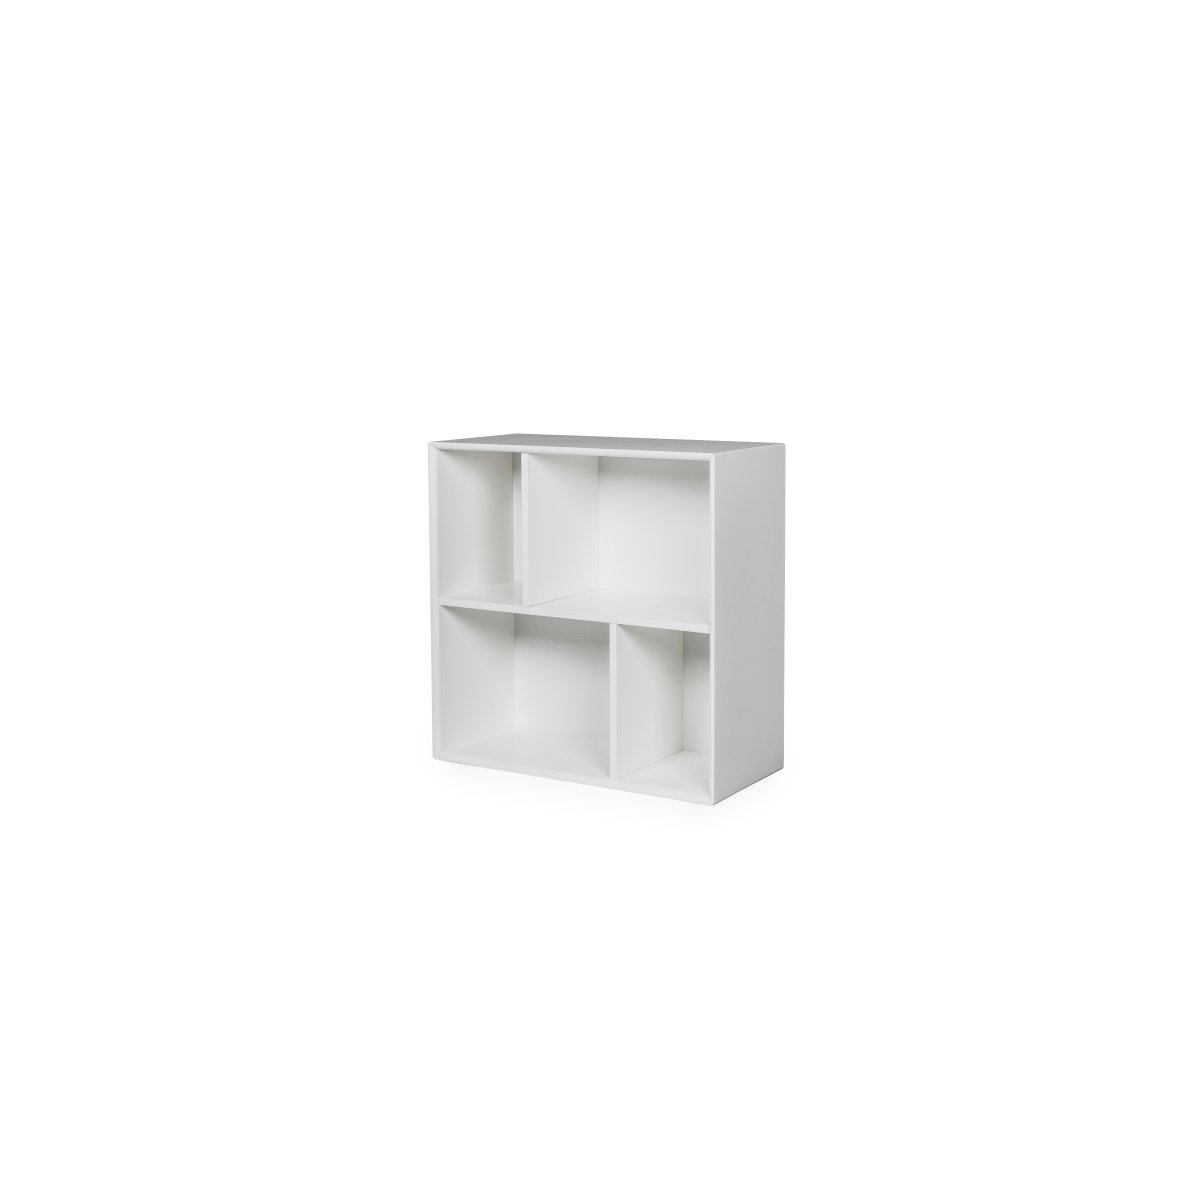 Petite étagère carrée style moderne blanc